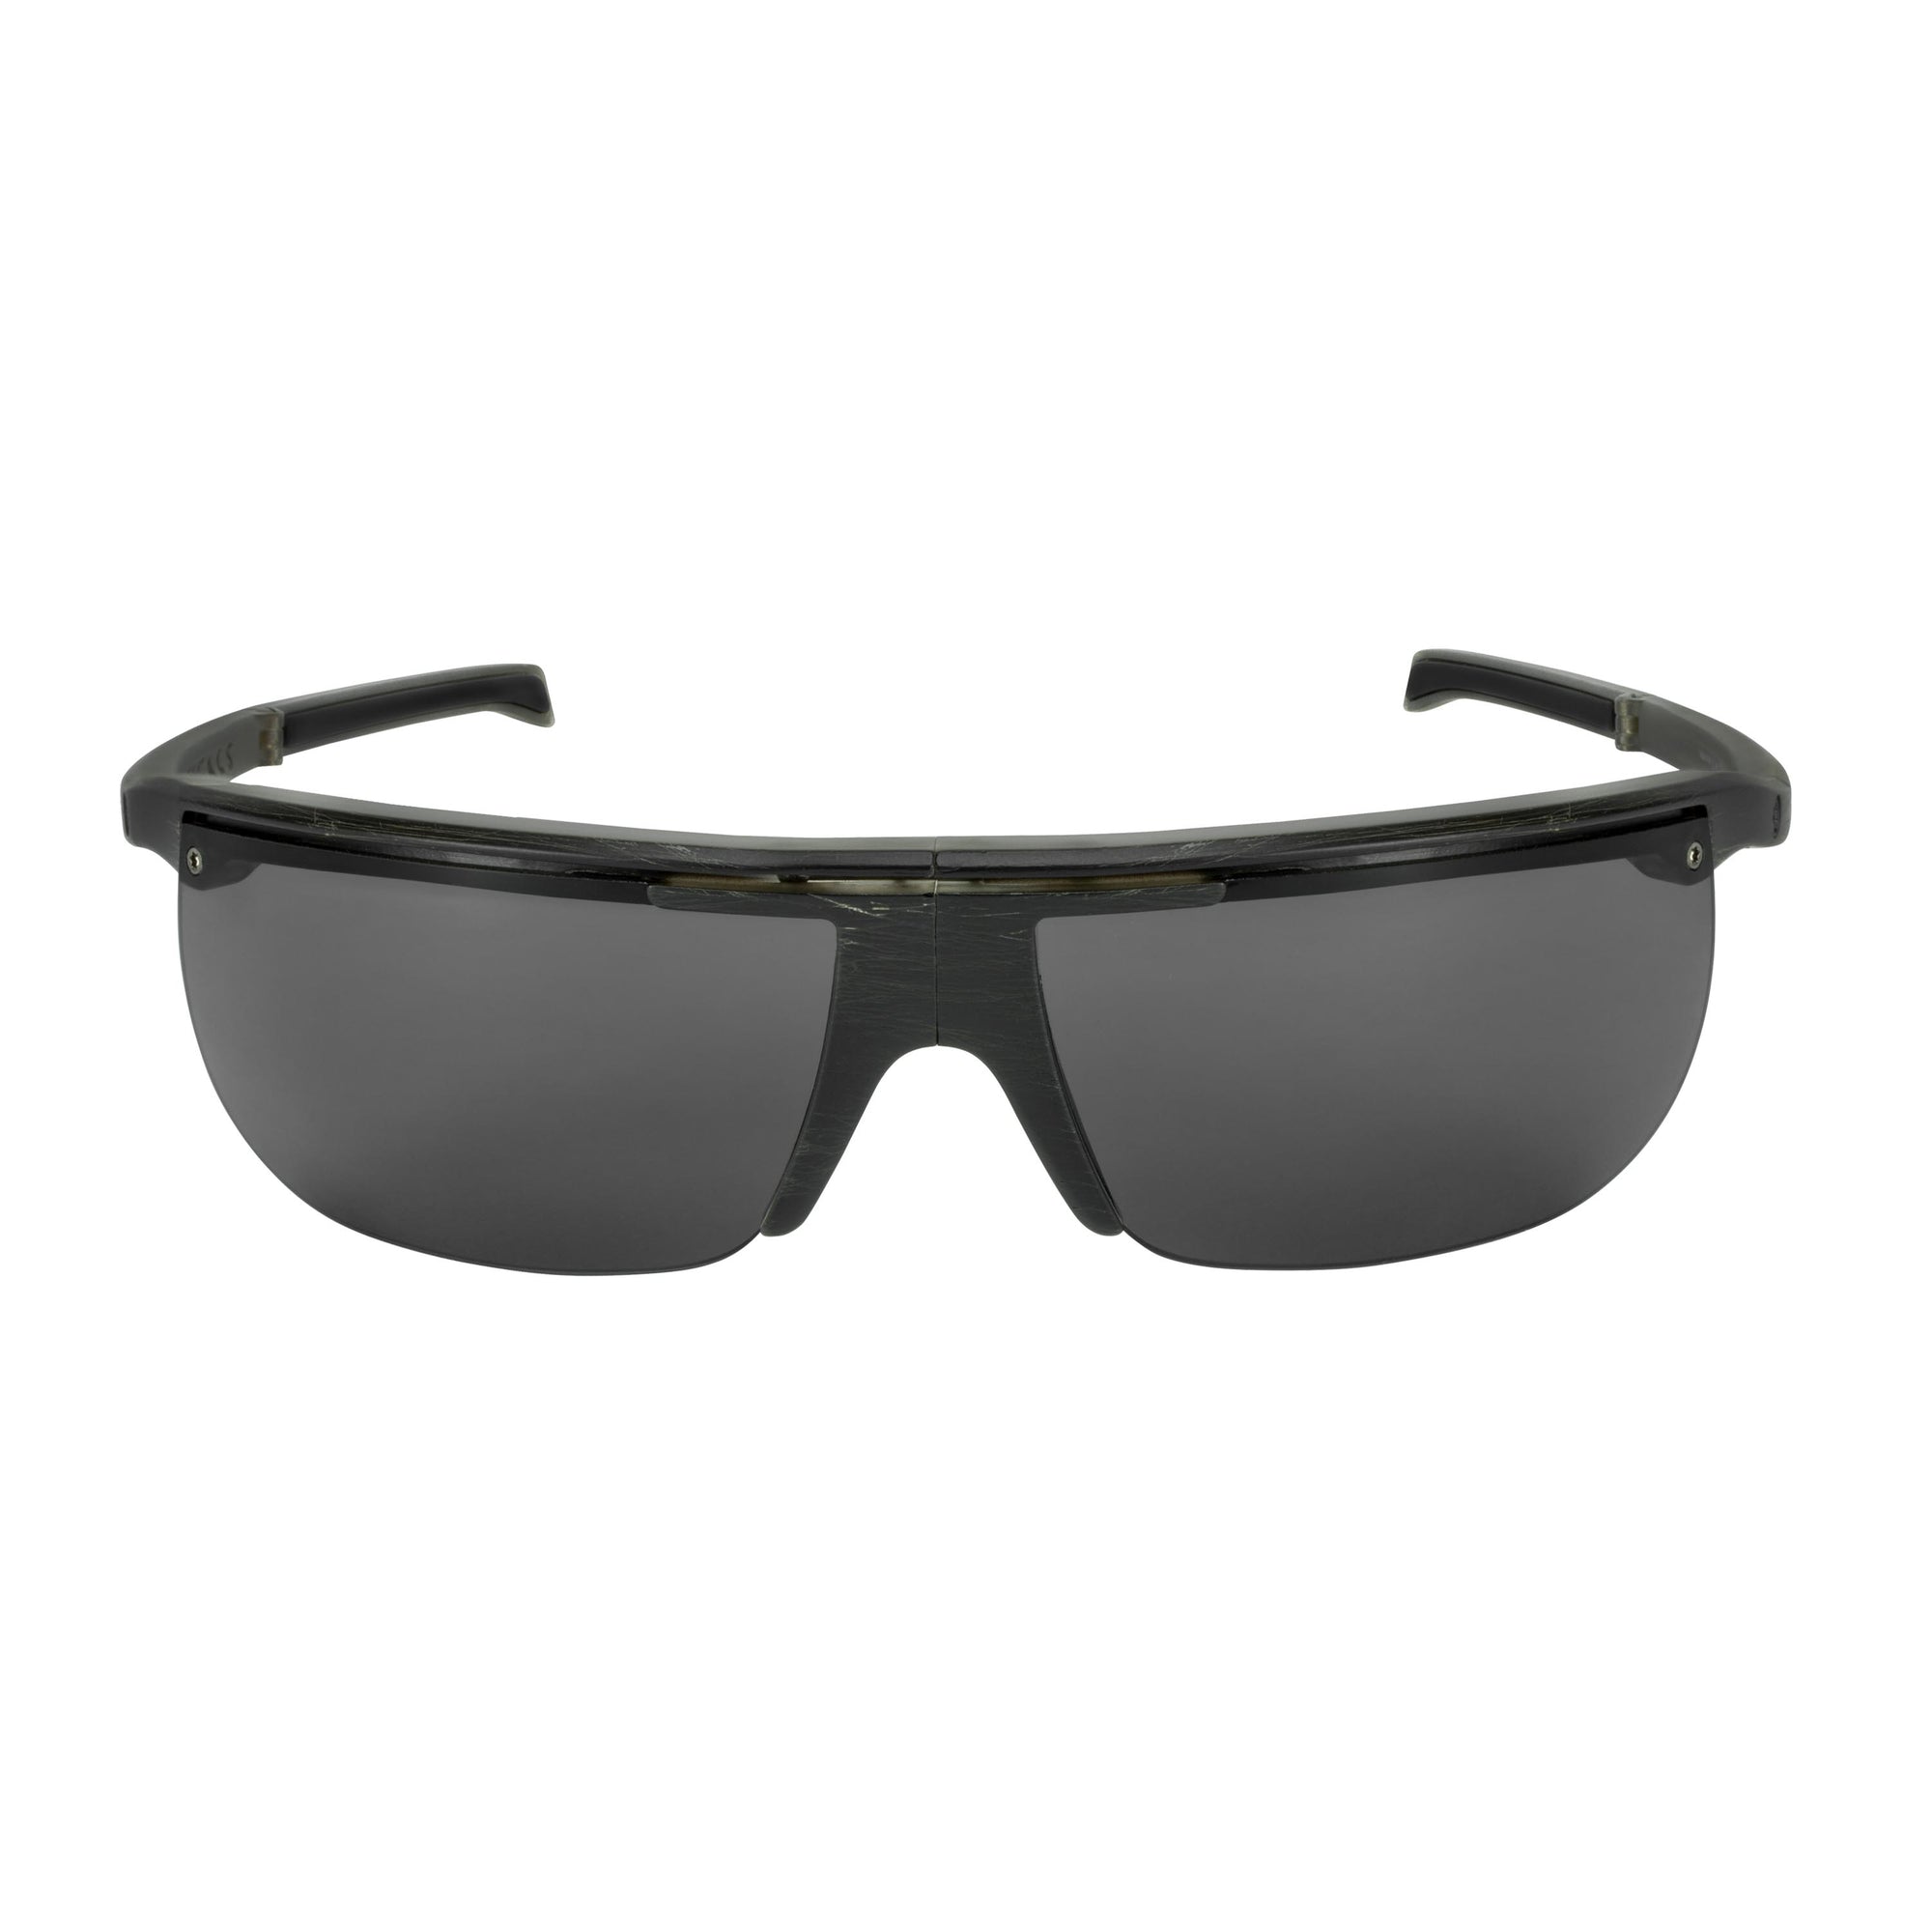 Popticals, Premium Compact Sunglasses, PopArt, 090030-ZUGP, Polarized Sunglasses, Matte Brush Black Frame, Gray Lenses, Front Tilt View